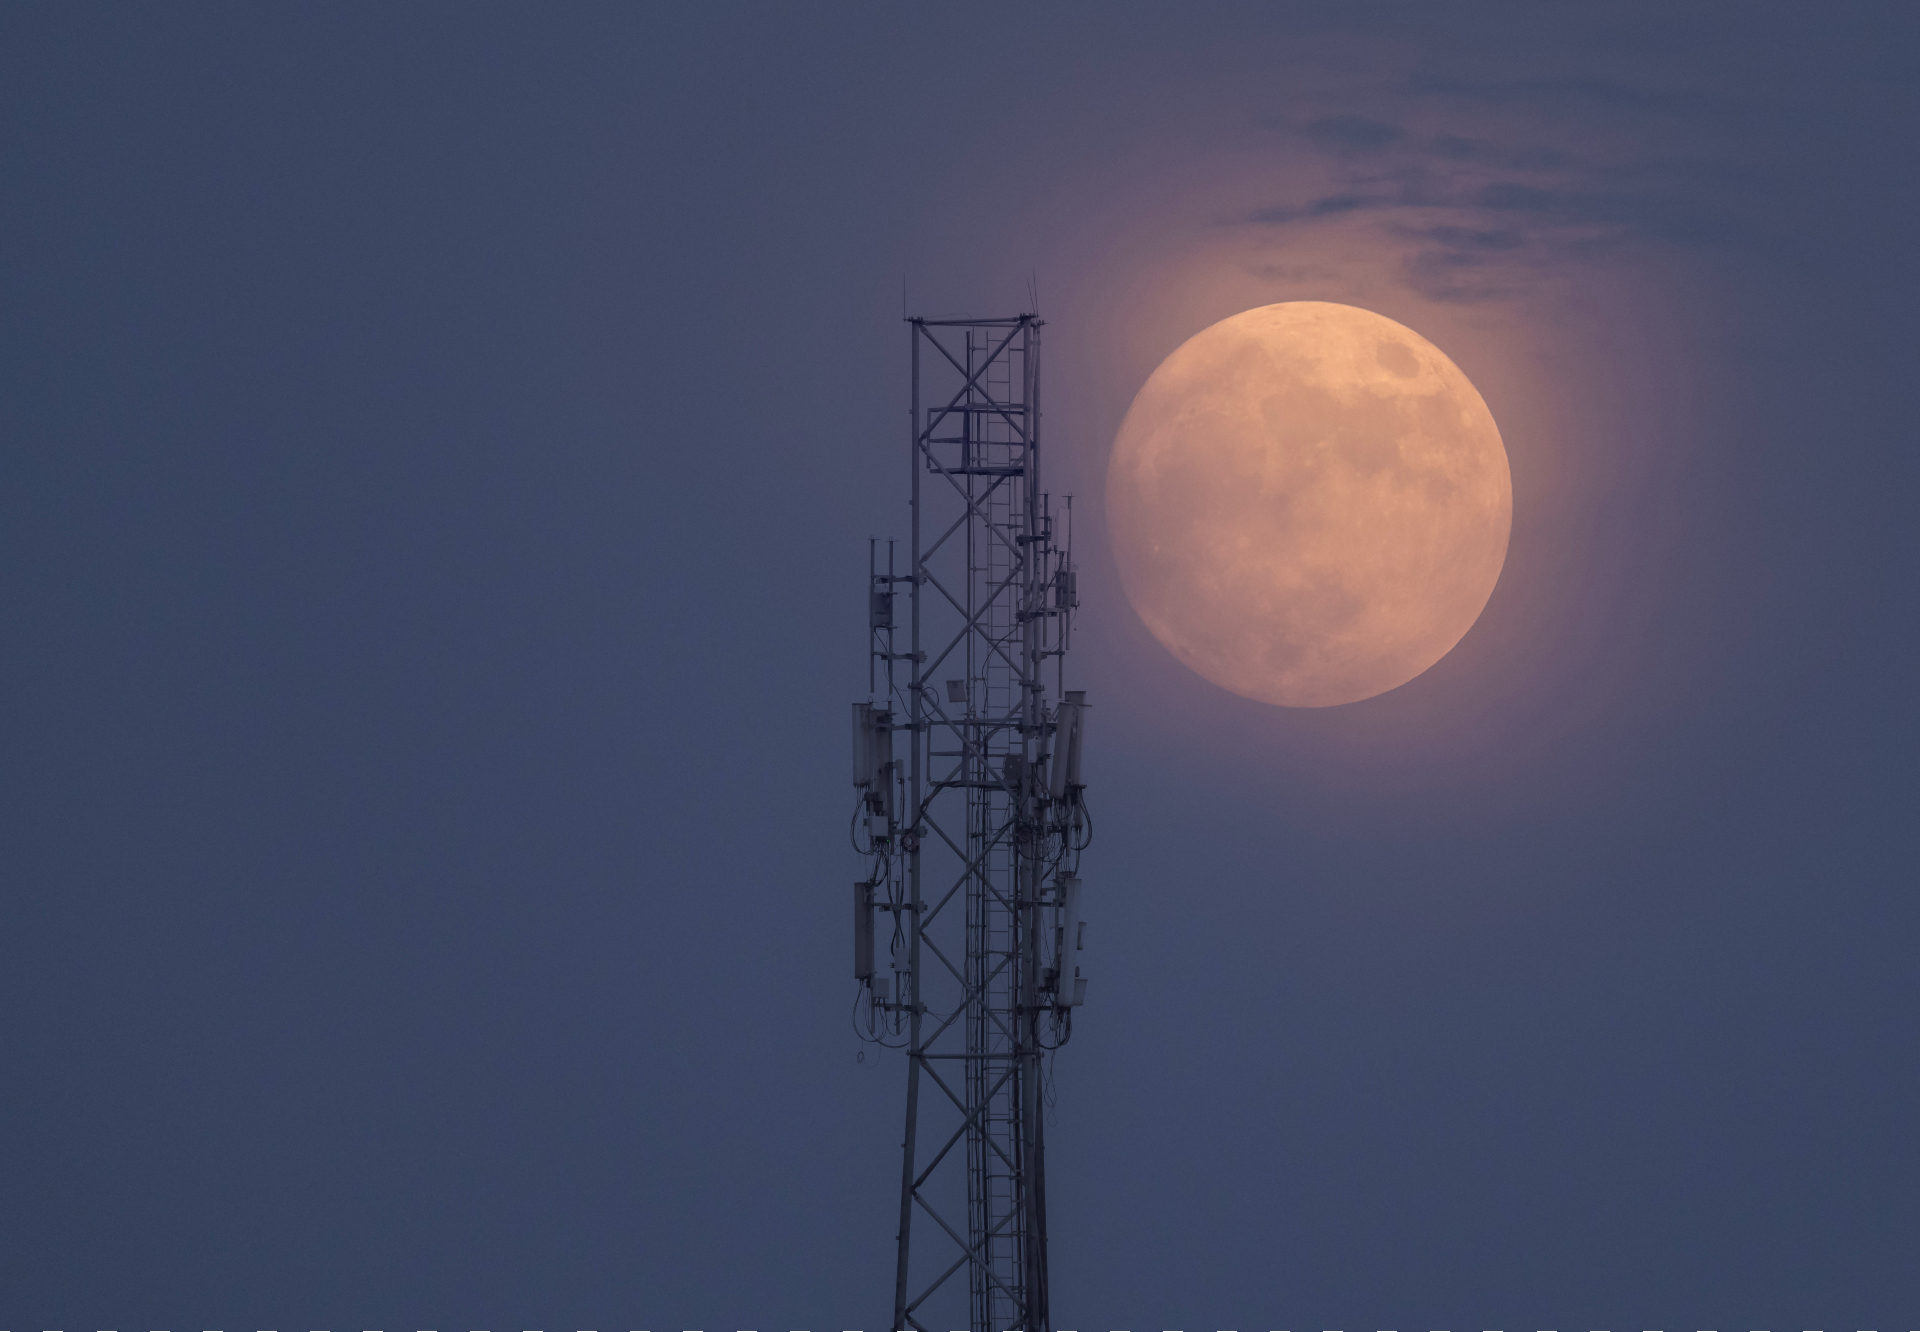 Neben dem Turm leuchtet ein riesiger blauer Mond in dunstigem Orange.